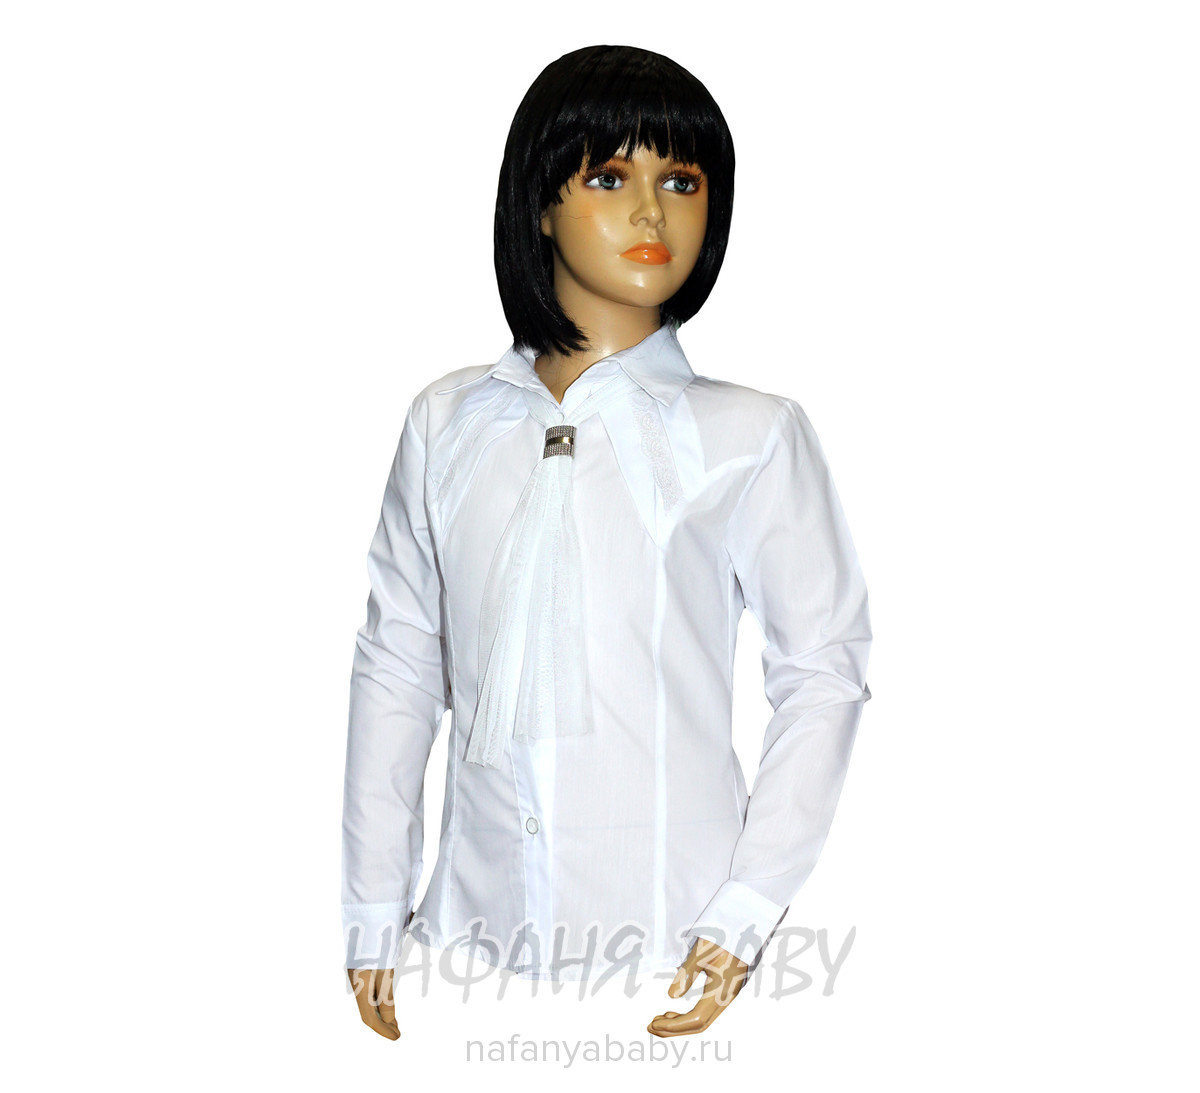 Детская блузка STAR KIDS, купить в интернет магазине Нафаня. арт: 125.